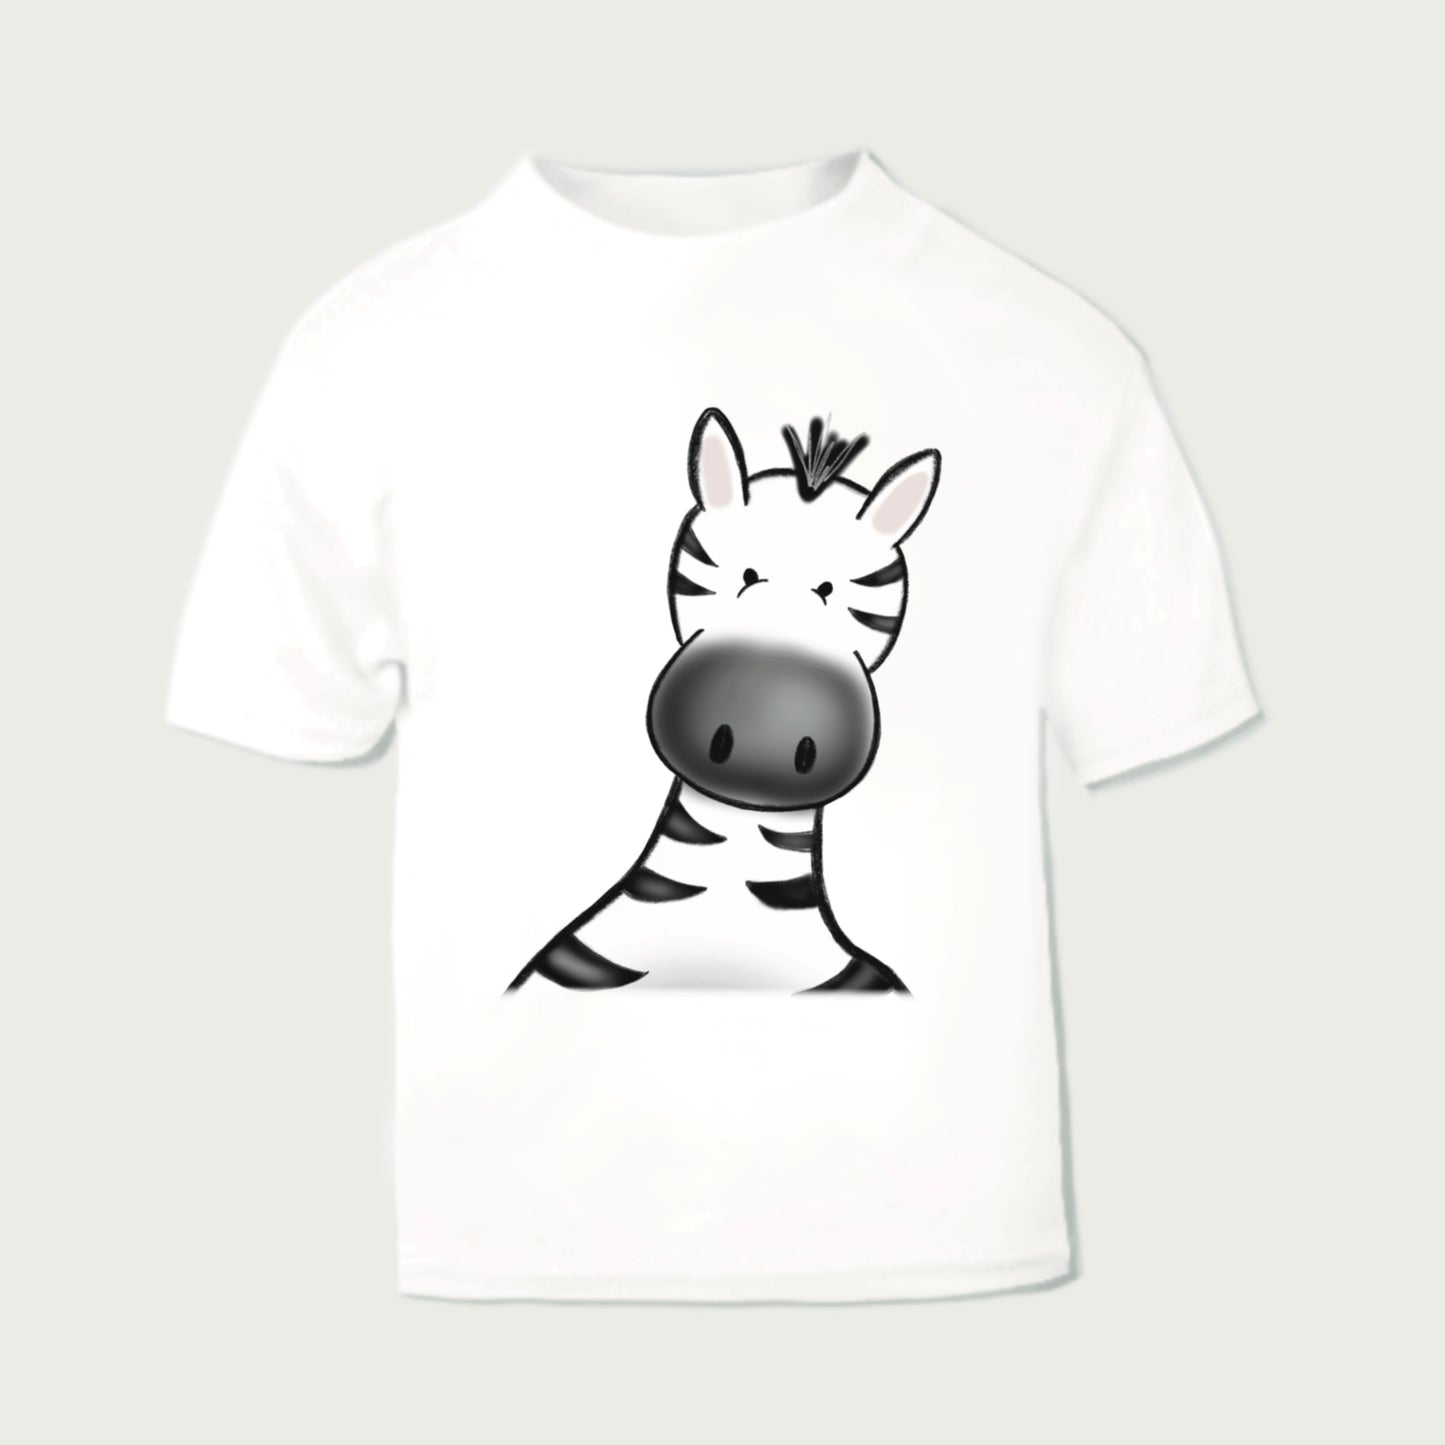 safari zebra children's printed t-shirt design